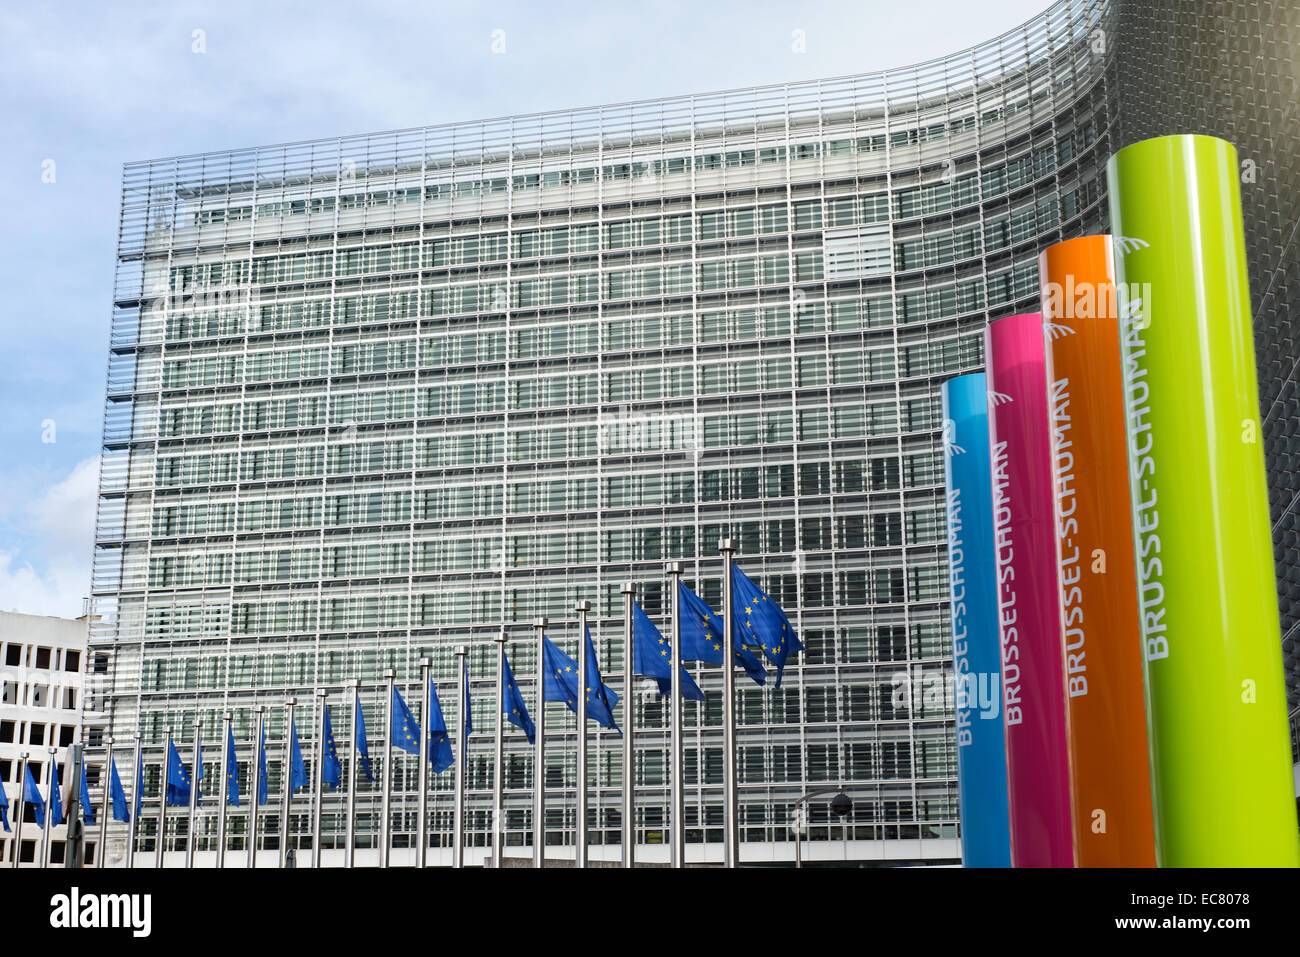 Brüssel, Belgien – 24. Februar 2014: Foto der Europäischen Union Fahnen vor dem Berlaymont-Gebäude (Europäische Kommission) Stockfoto